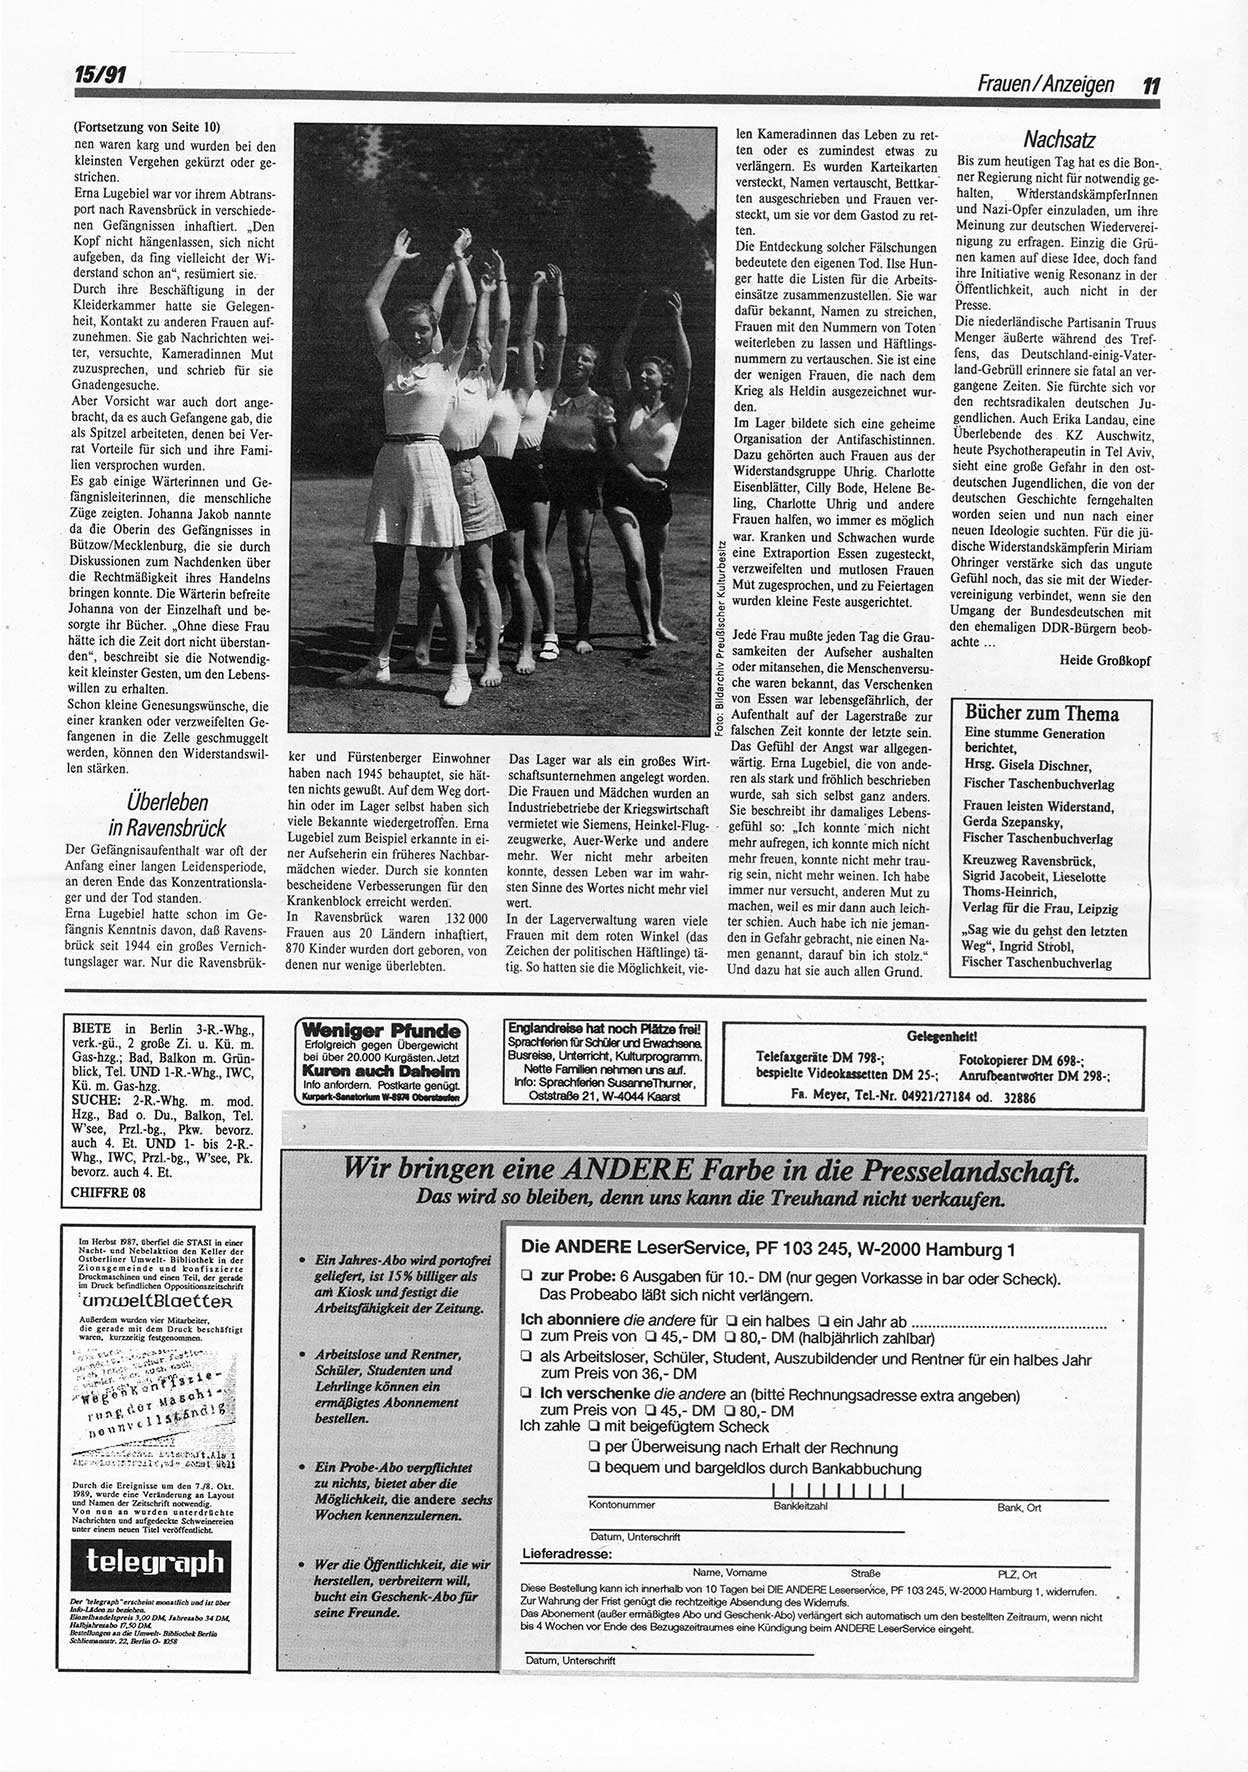 Die Andere, Unabhängige Wochenzeitung für Politik, Kultur und Kunst, Ausgabe 15 vom 10.4.1991, Seite 11 (And. W.-Zg. Ausg. 15 1991, S. 11)